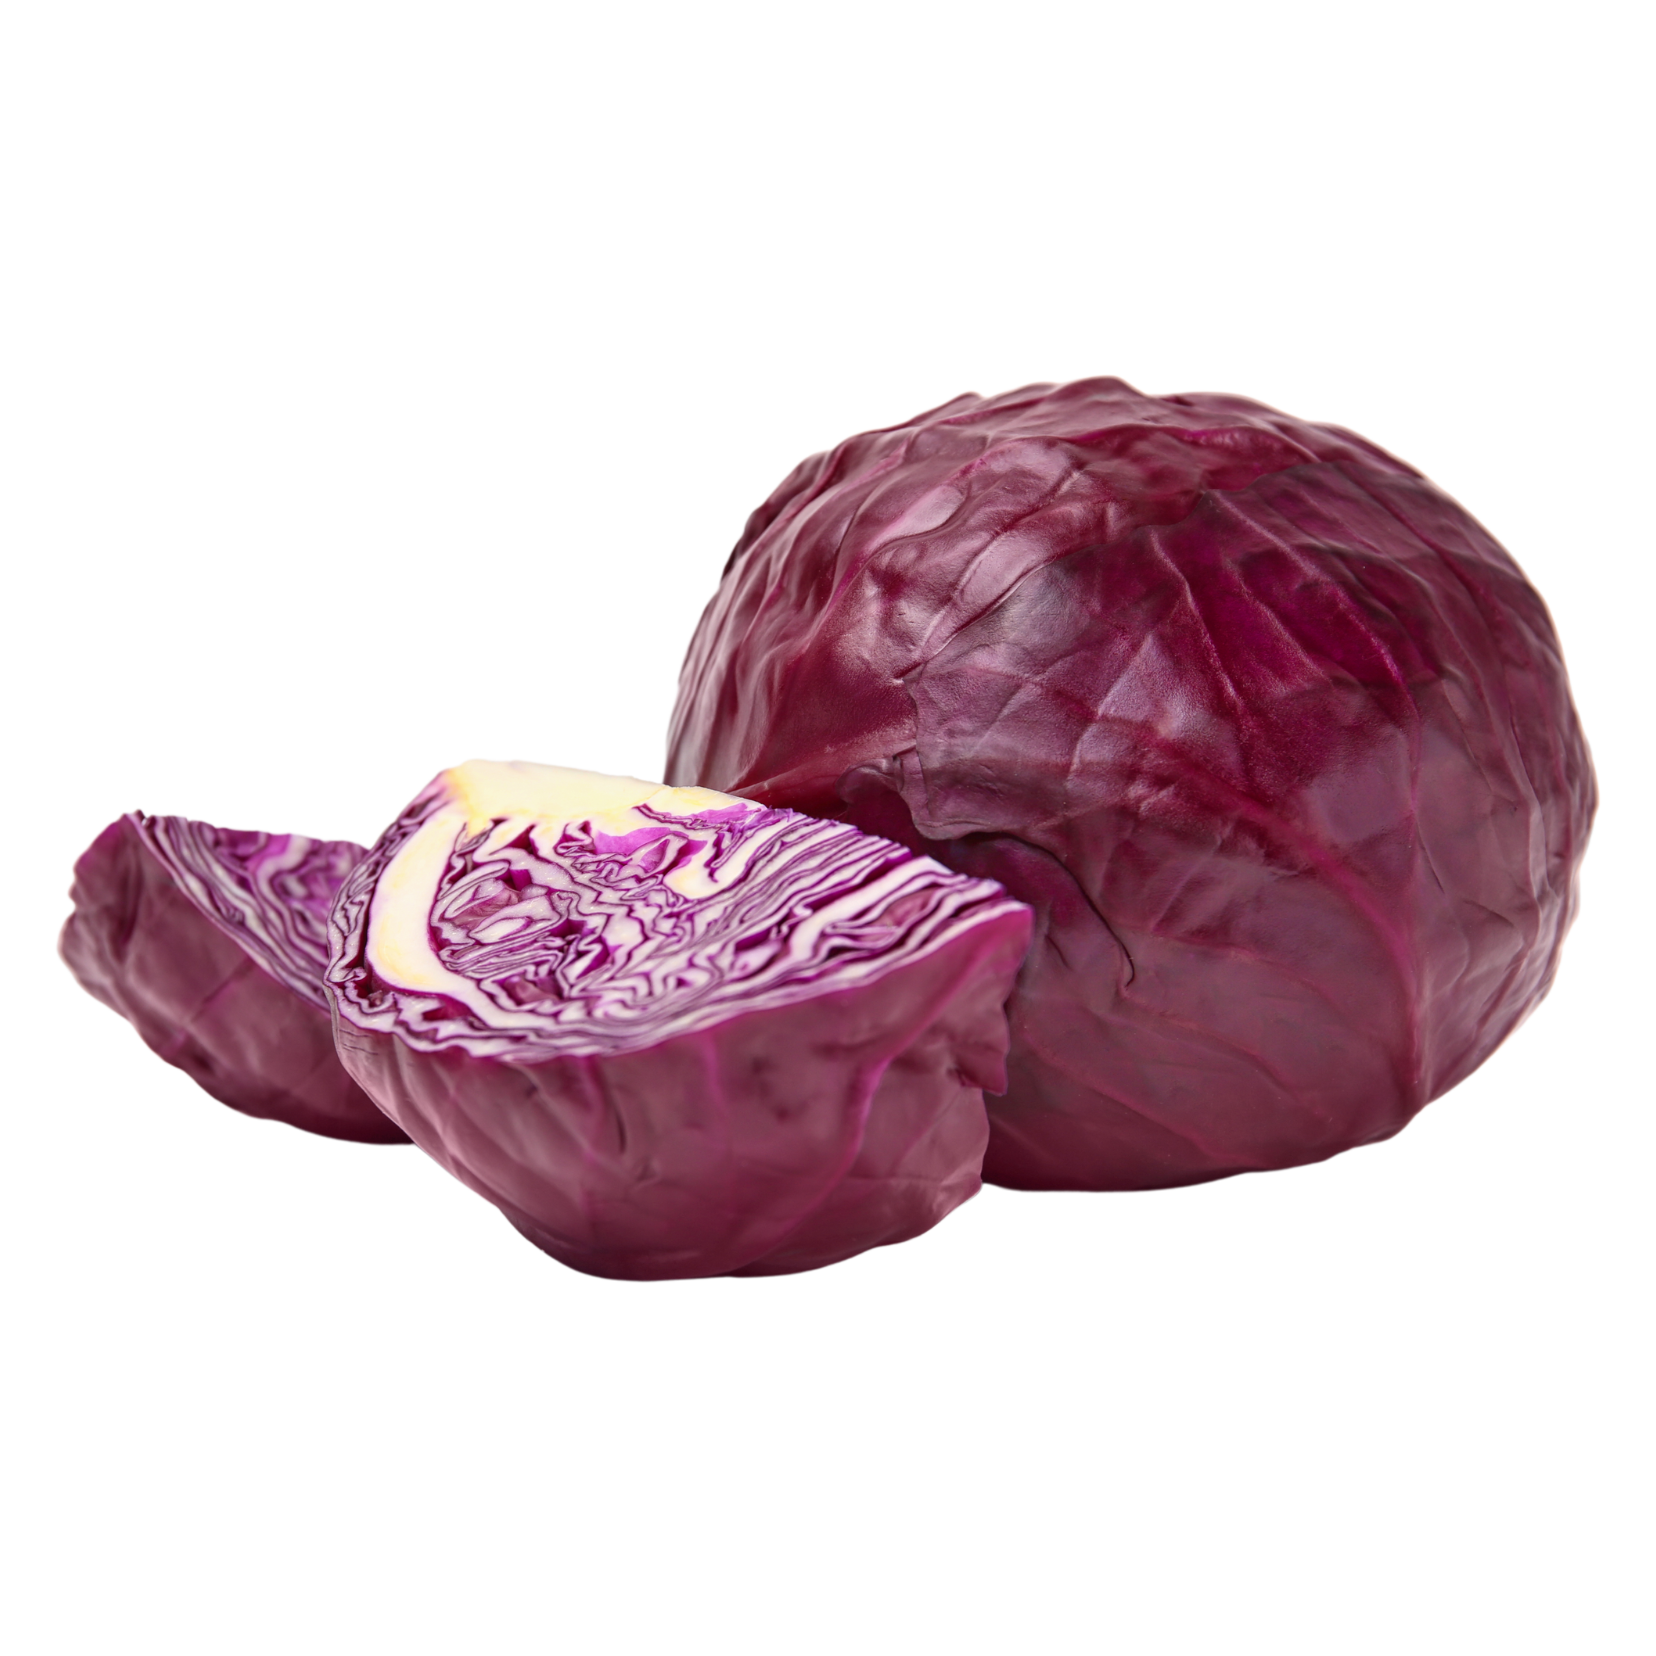 Wholegood Red Cabbage, 1pcs